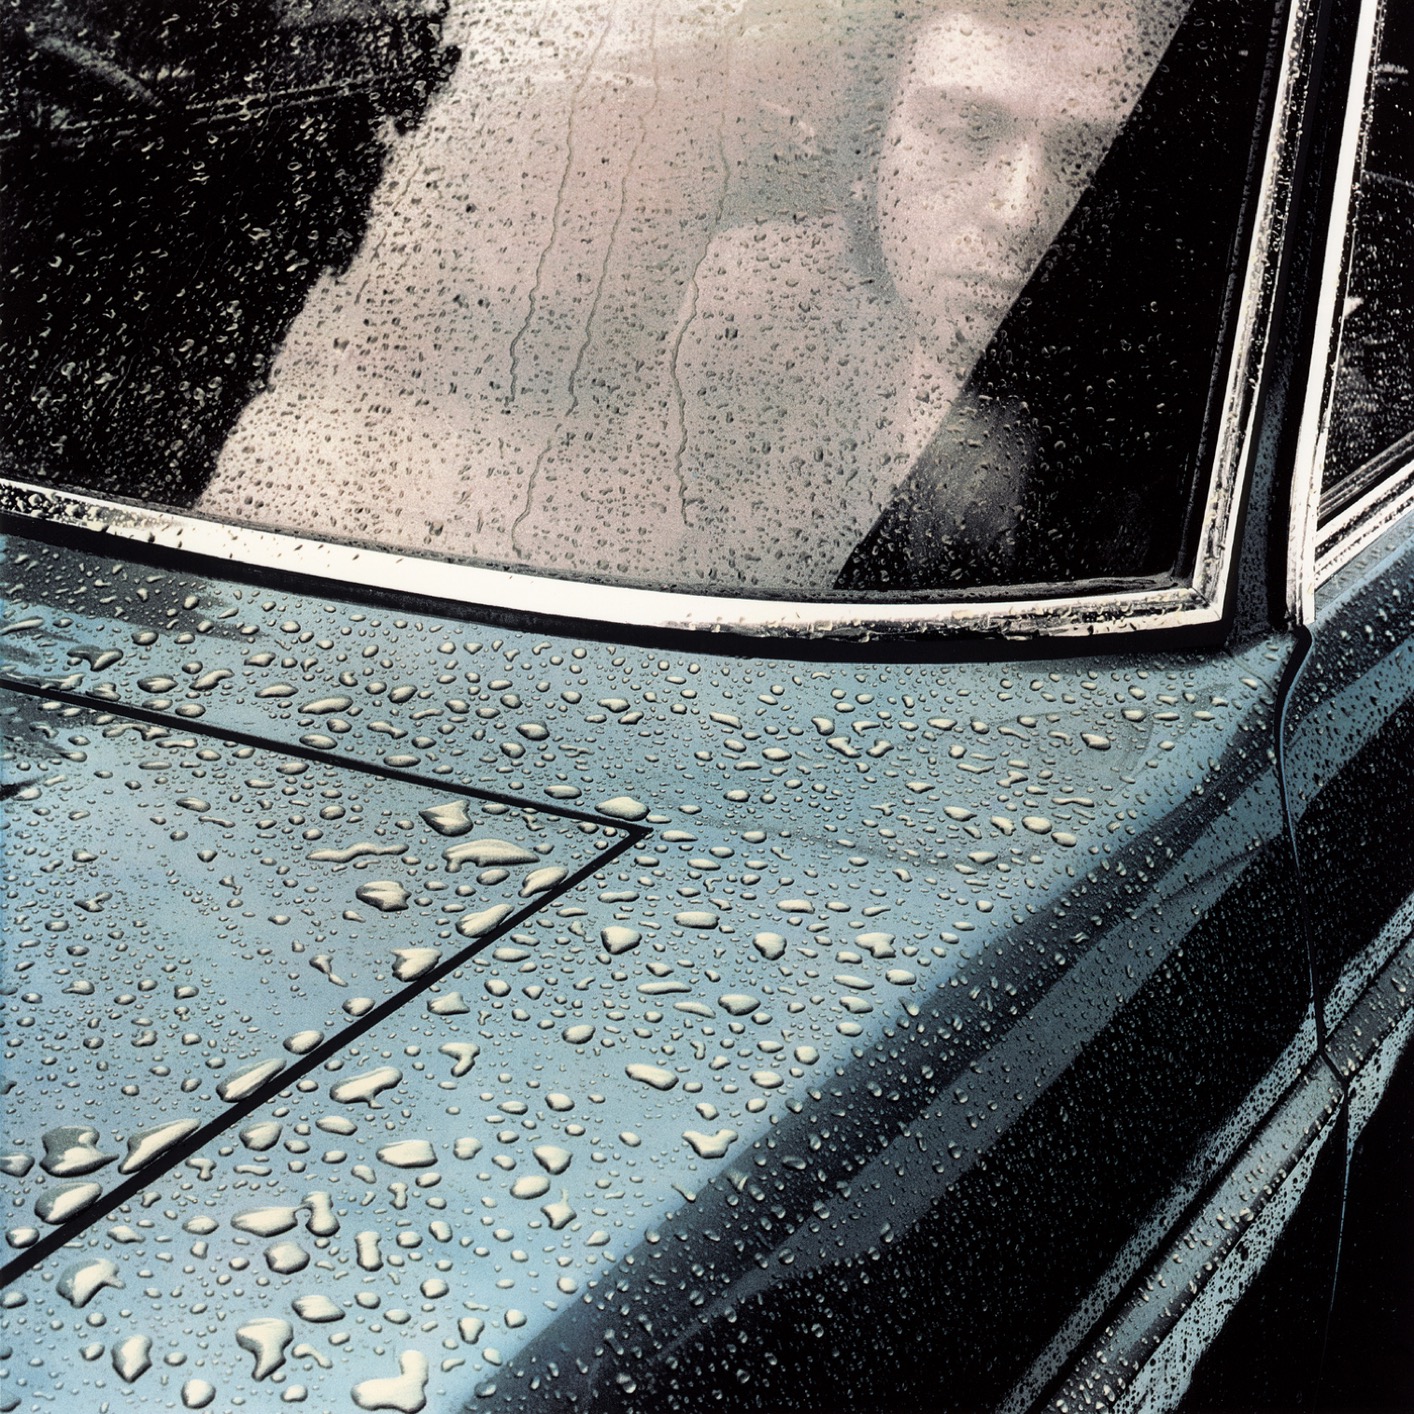 Peter Gabriel – Peter Gabriel 1: Car (Remastered) (1977/2019) [FLAC 24bit/96kHz]